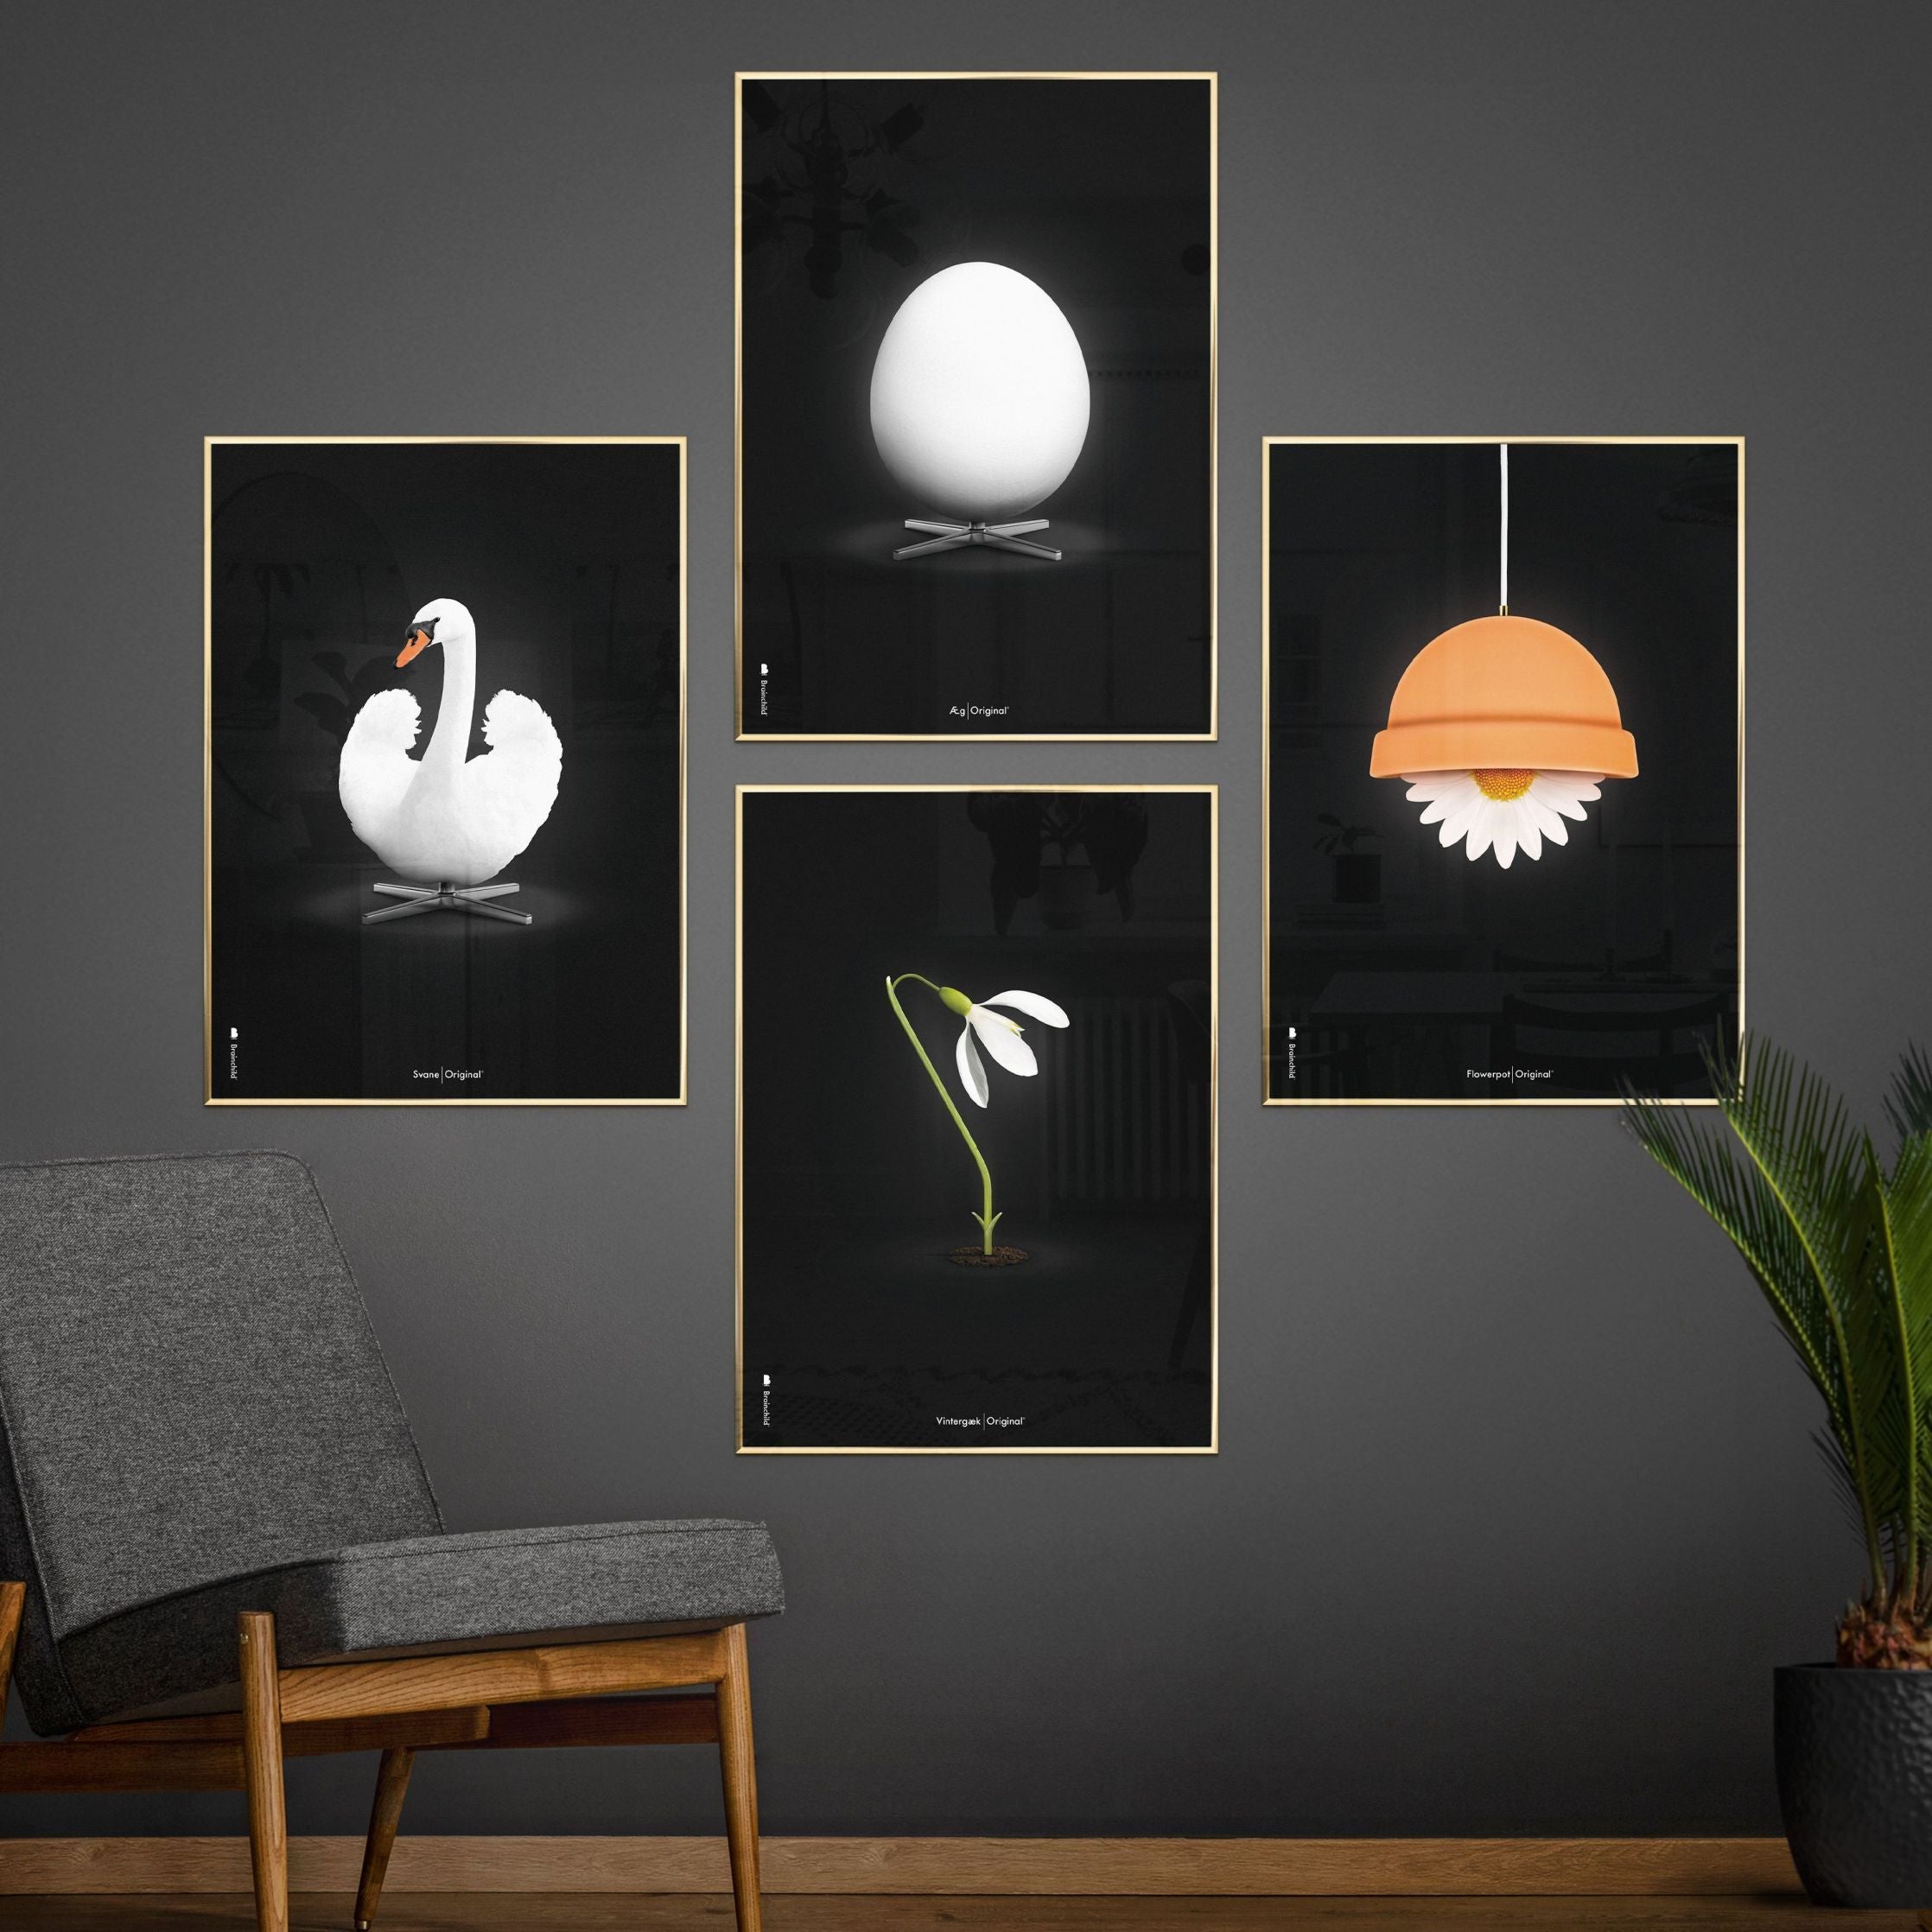 Brainchild Flowerpot Classic Affiche, Frame en bois foncé A5, fond noir